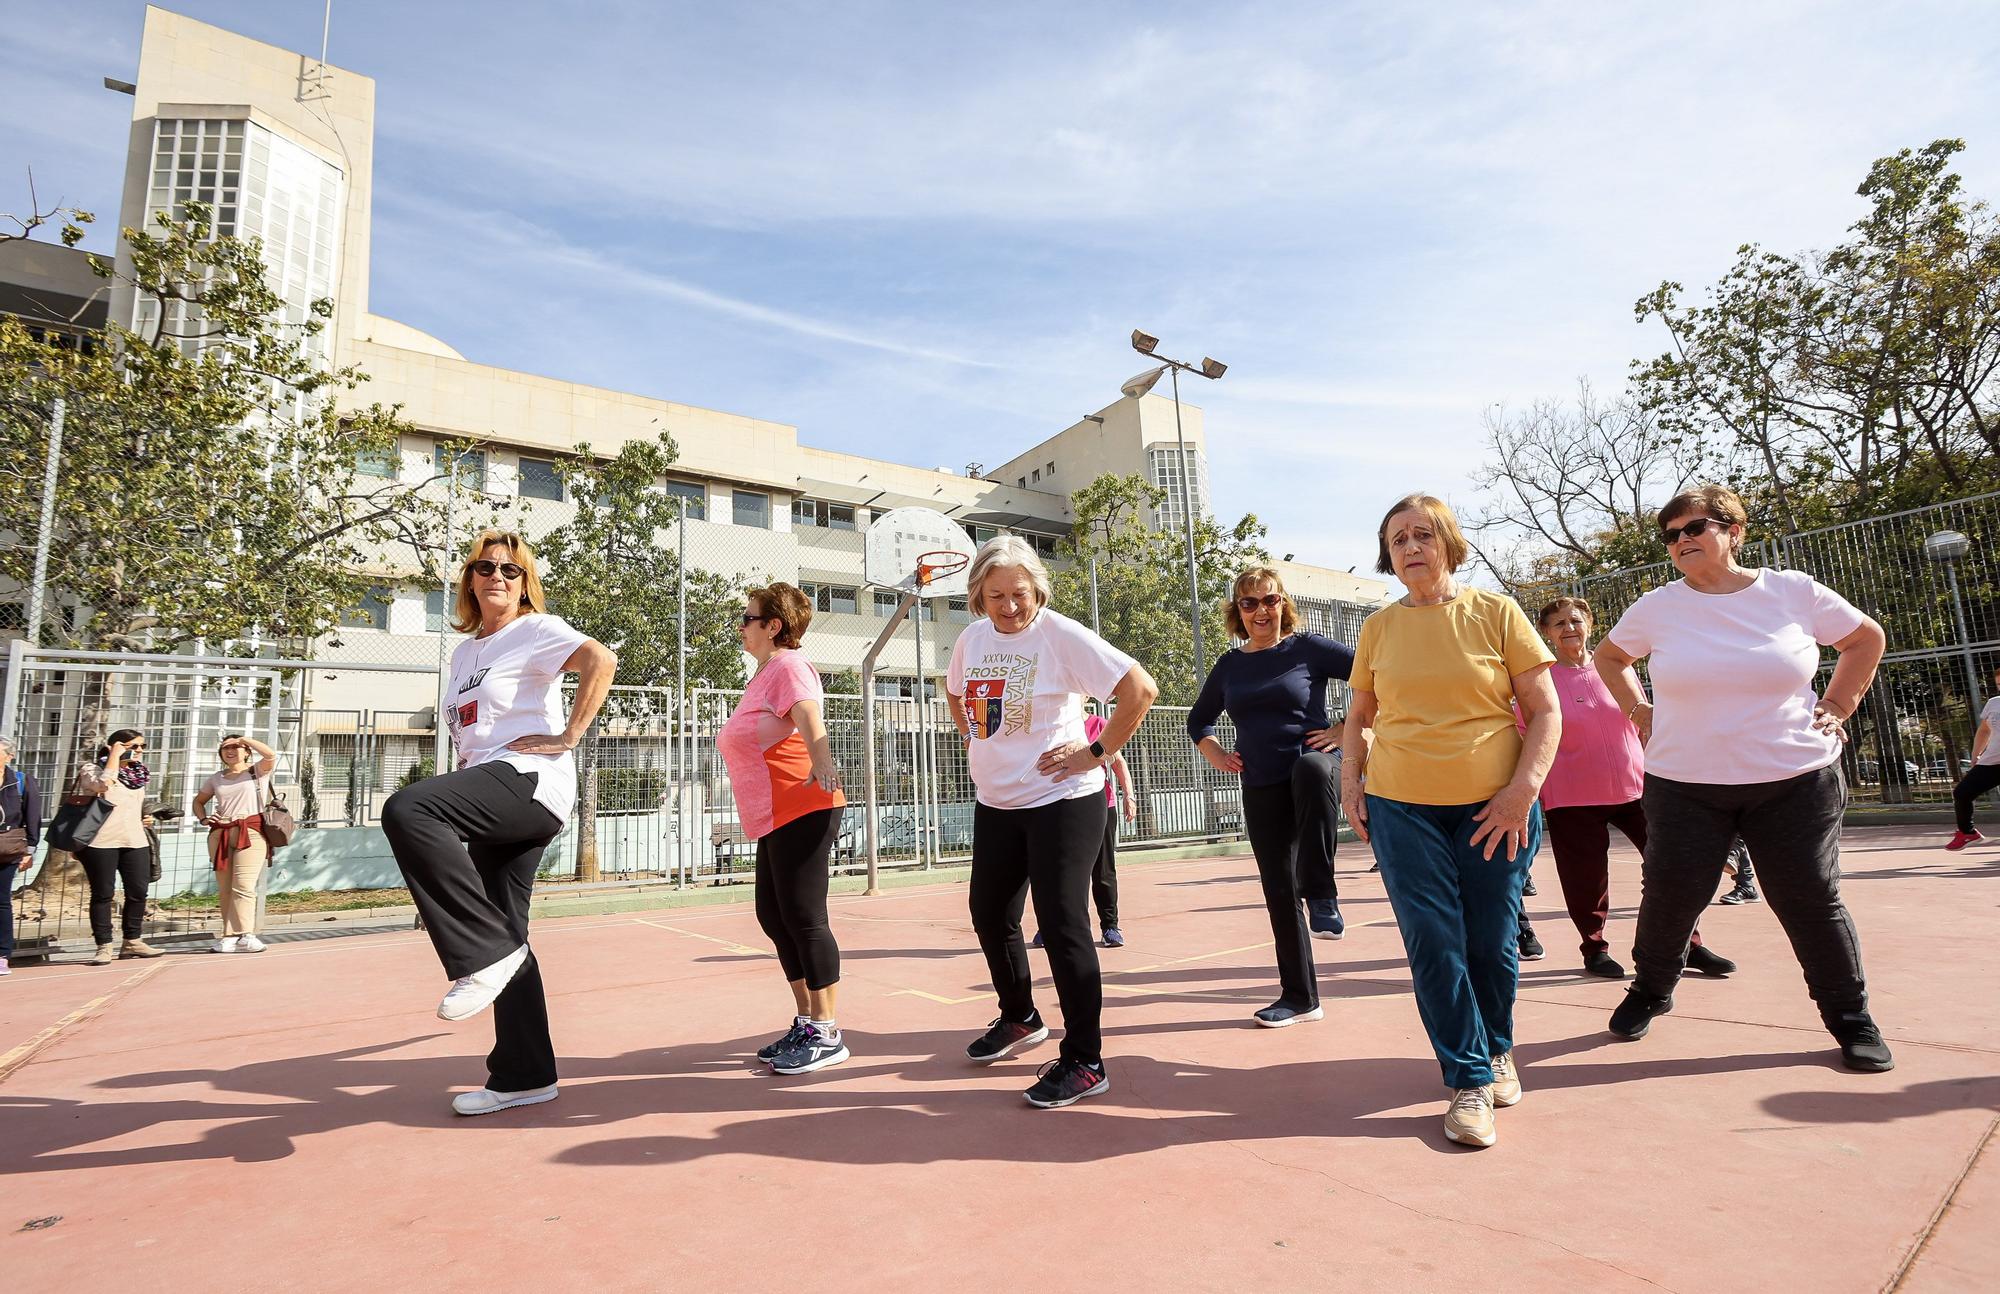 Programa "Ejercicio físico para todos" en Alicante